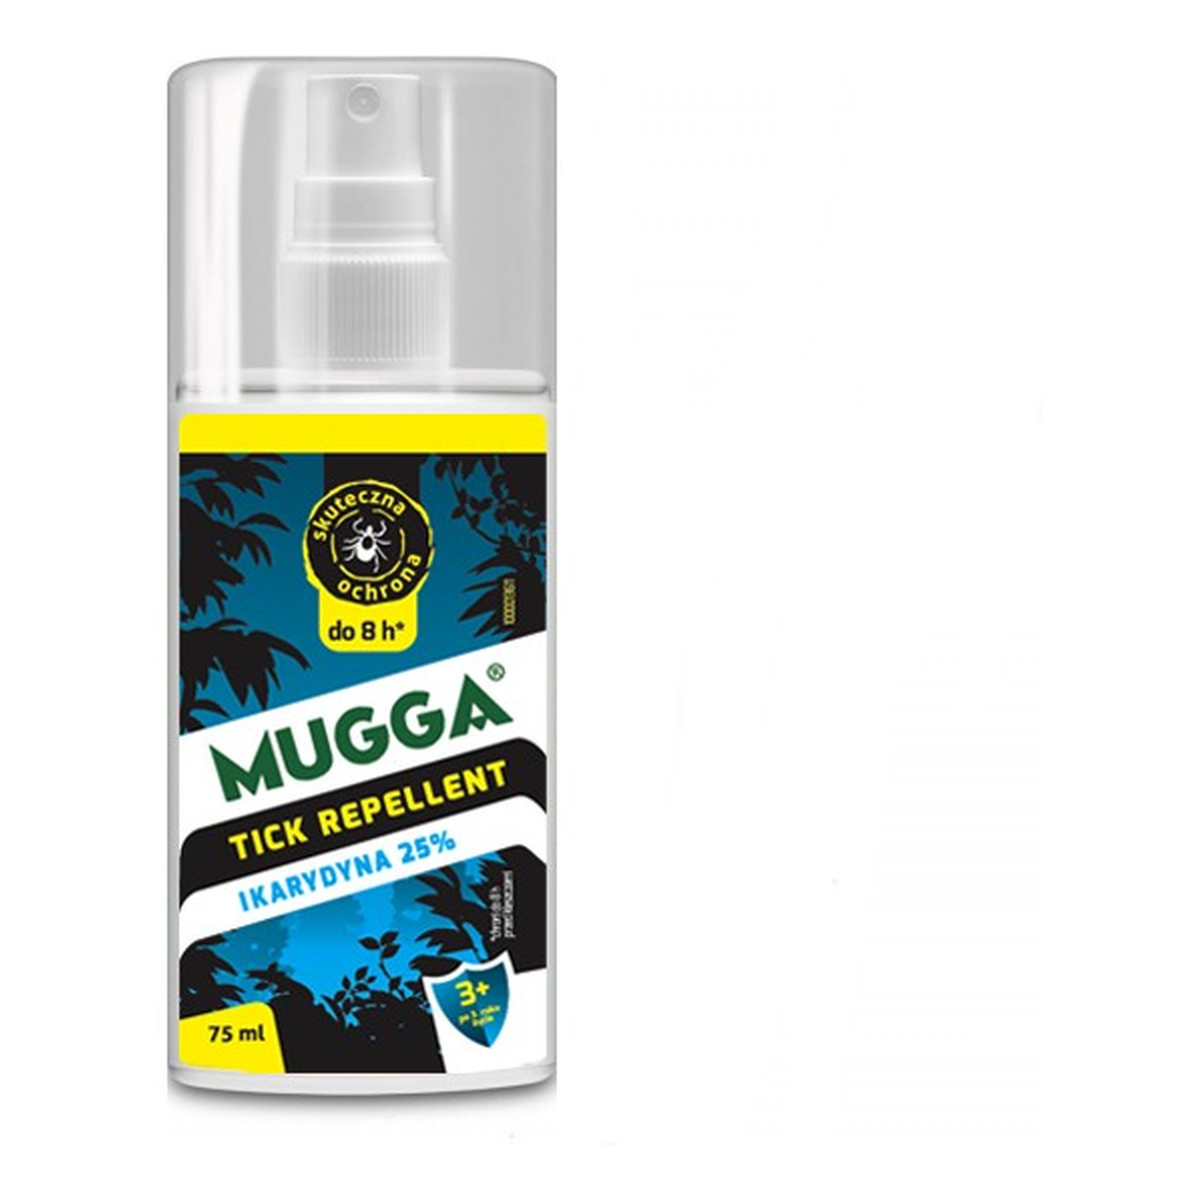 Mugga Spray-mgiełka przeciw kleszczom z ikarydyną 25% 75ml